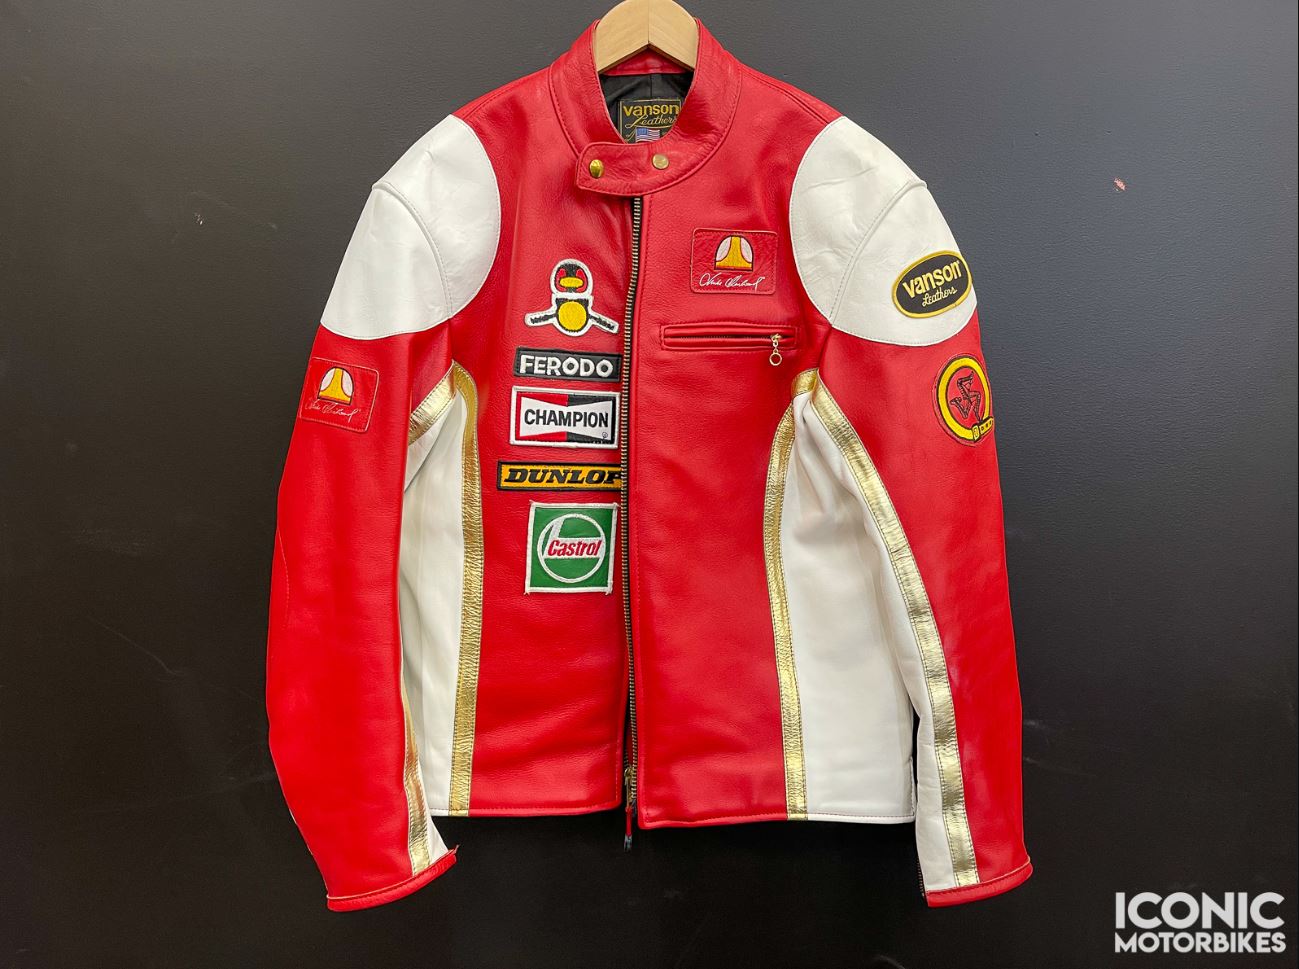 2004 Vanson Mike Hailwood Jacket – Iconic Motorbike Auctions